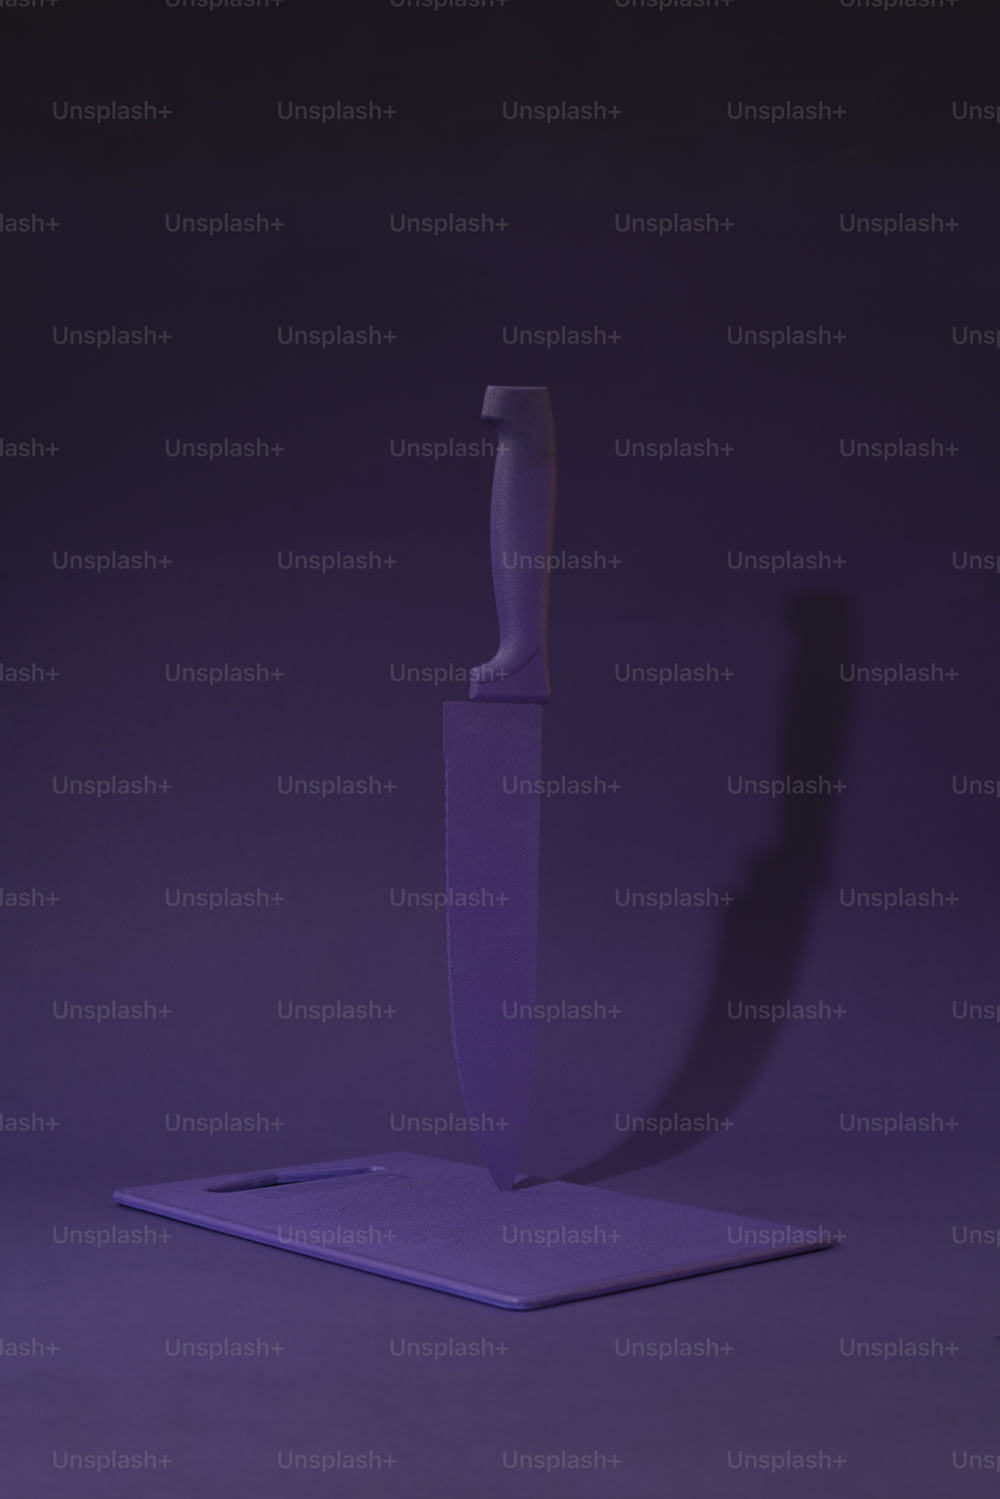 a purple knife on a purple background